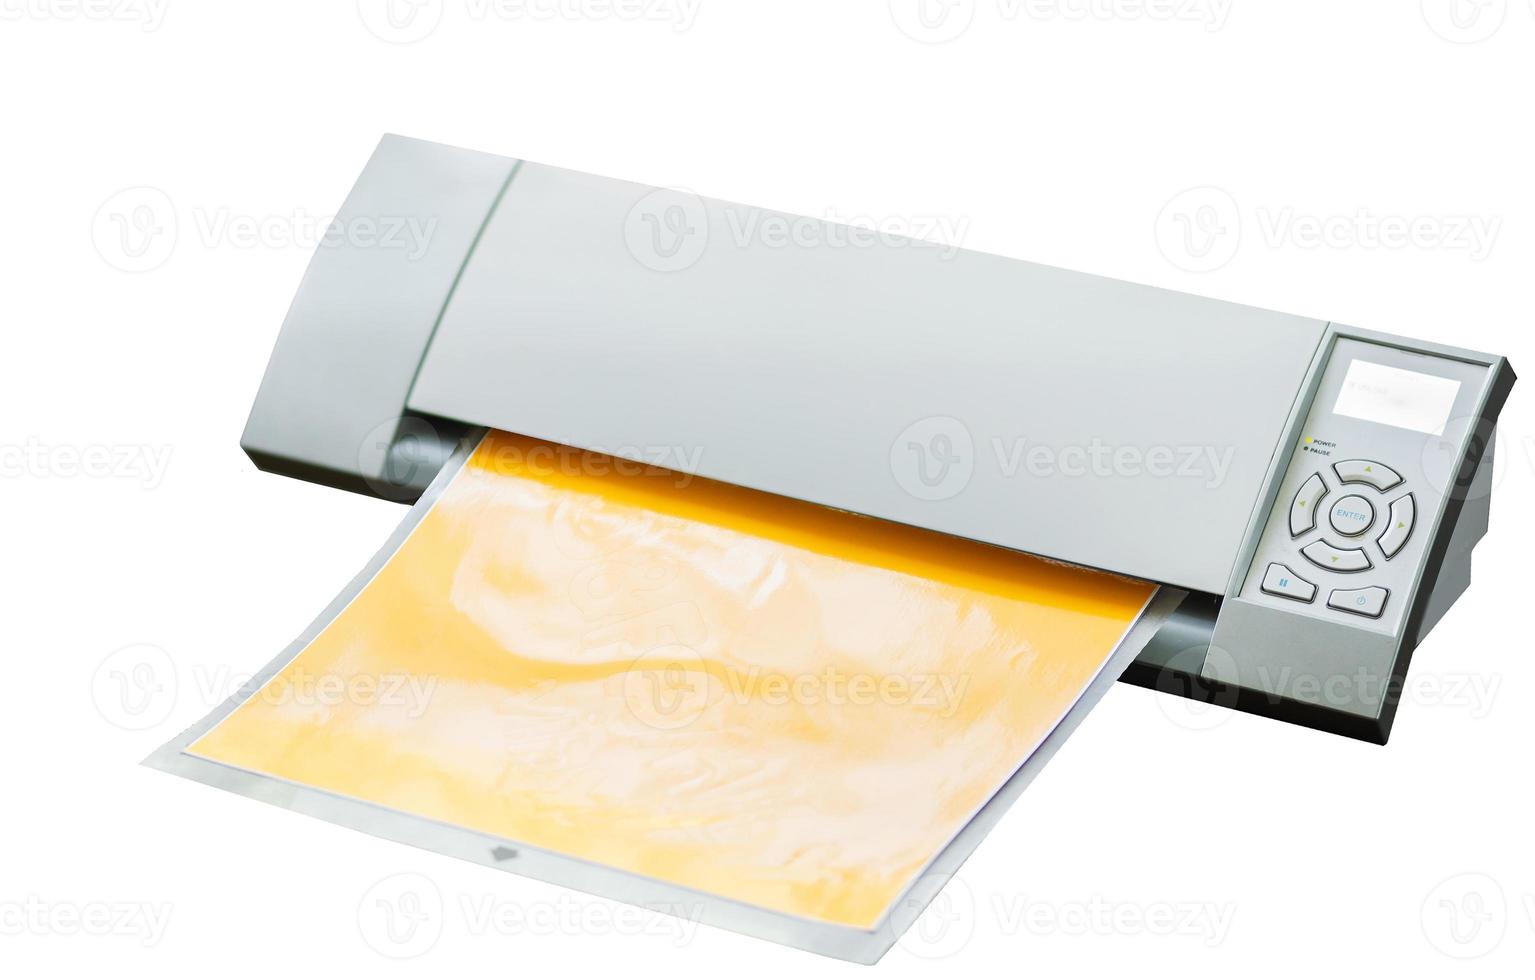 plotadora de corte. máquina de corte de papel para scrapbook isolado no fundo branco. equipamento de artesanato com almofada adesiva foto